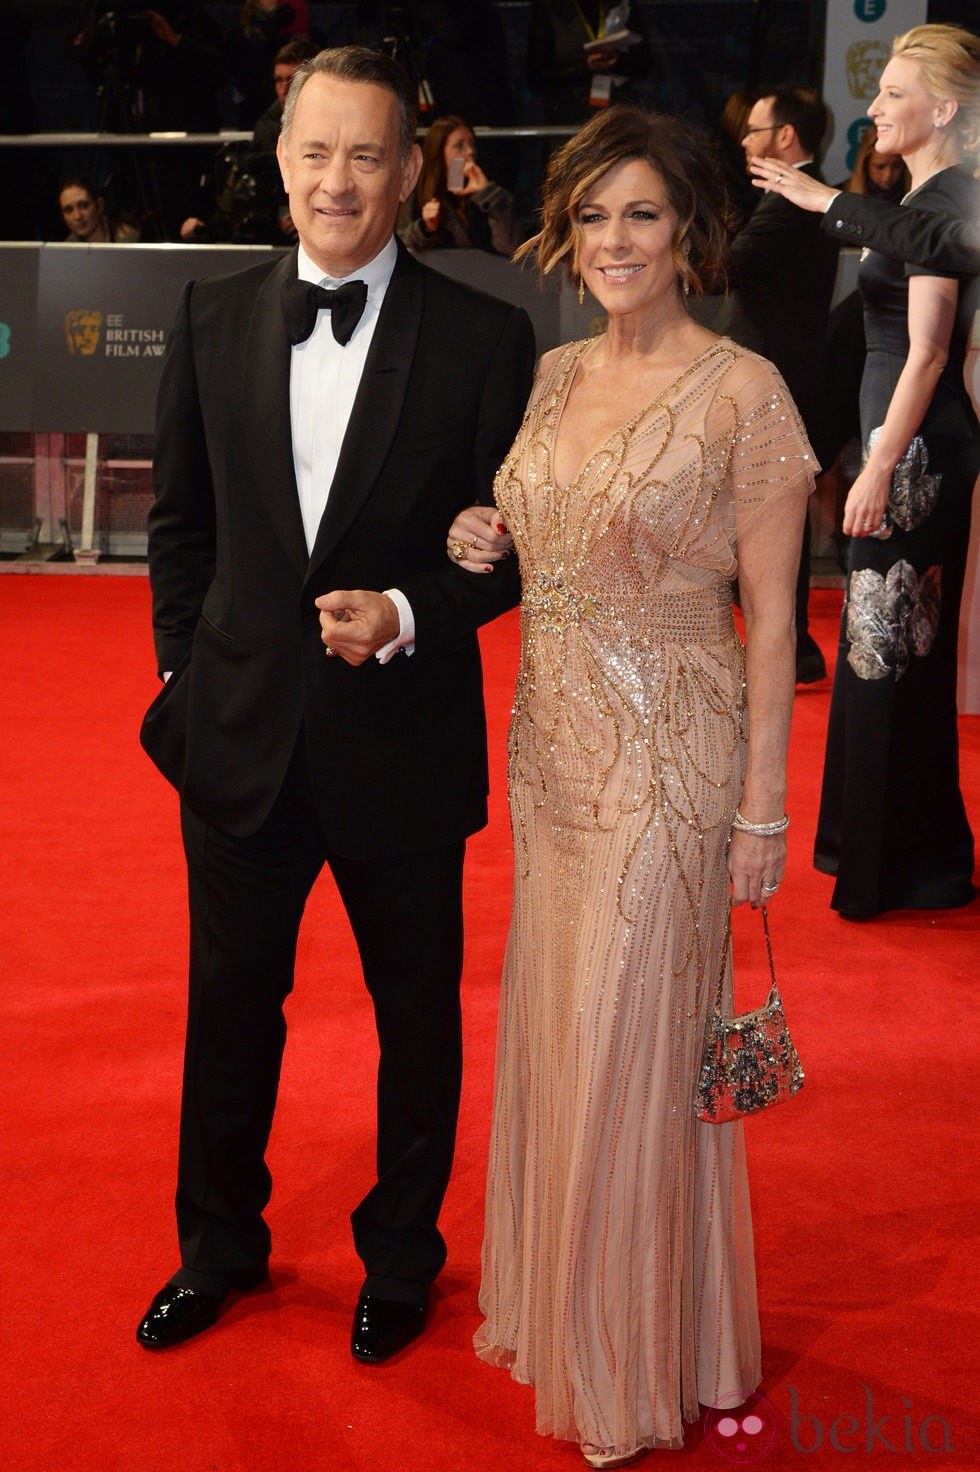 Tom Hanks y Rita Wilson en la alfombra roja de los BAFTA 2014